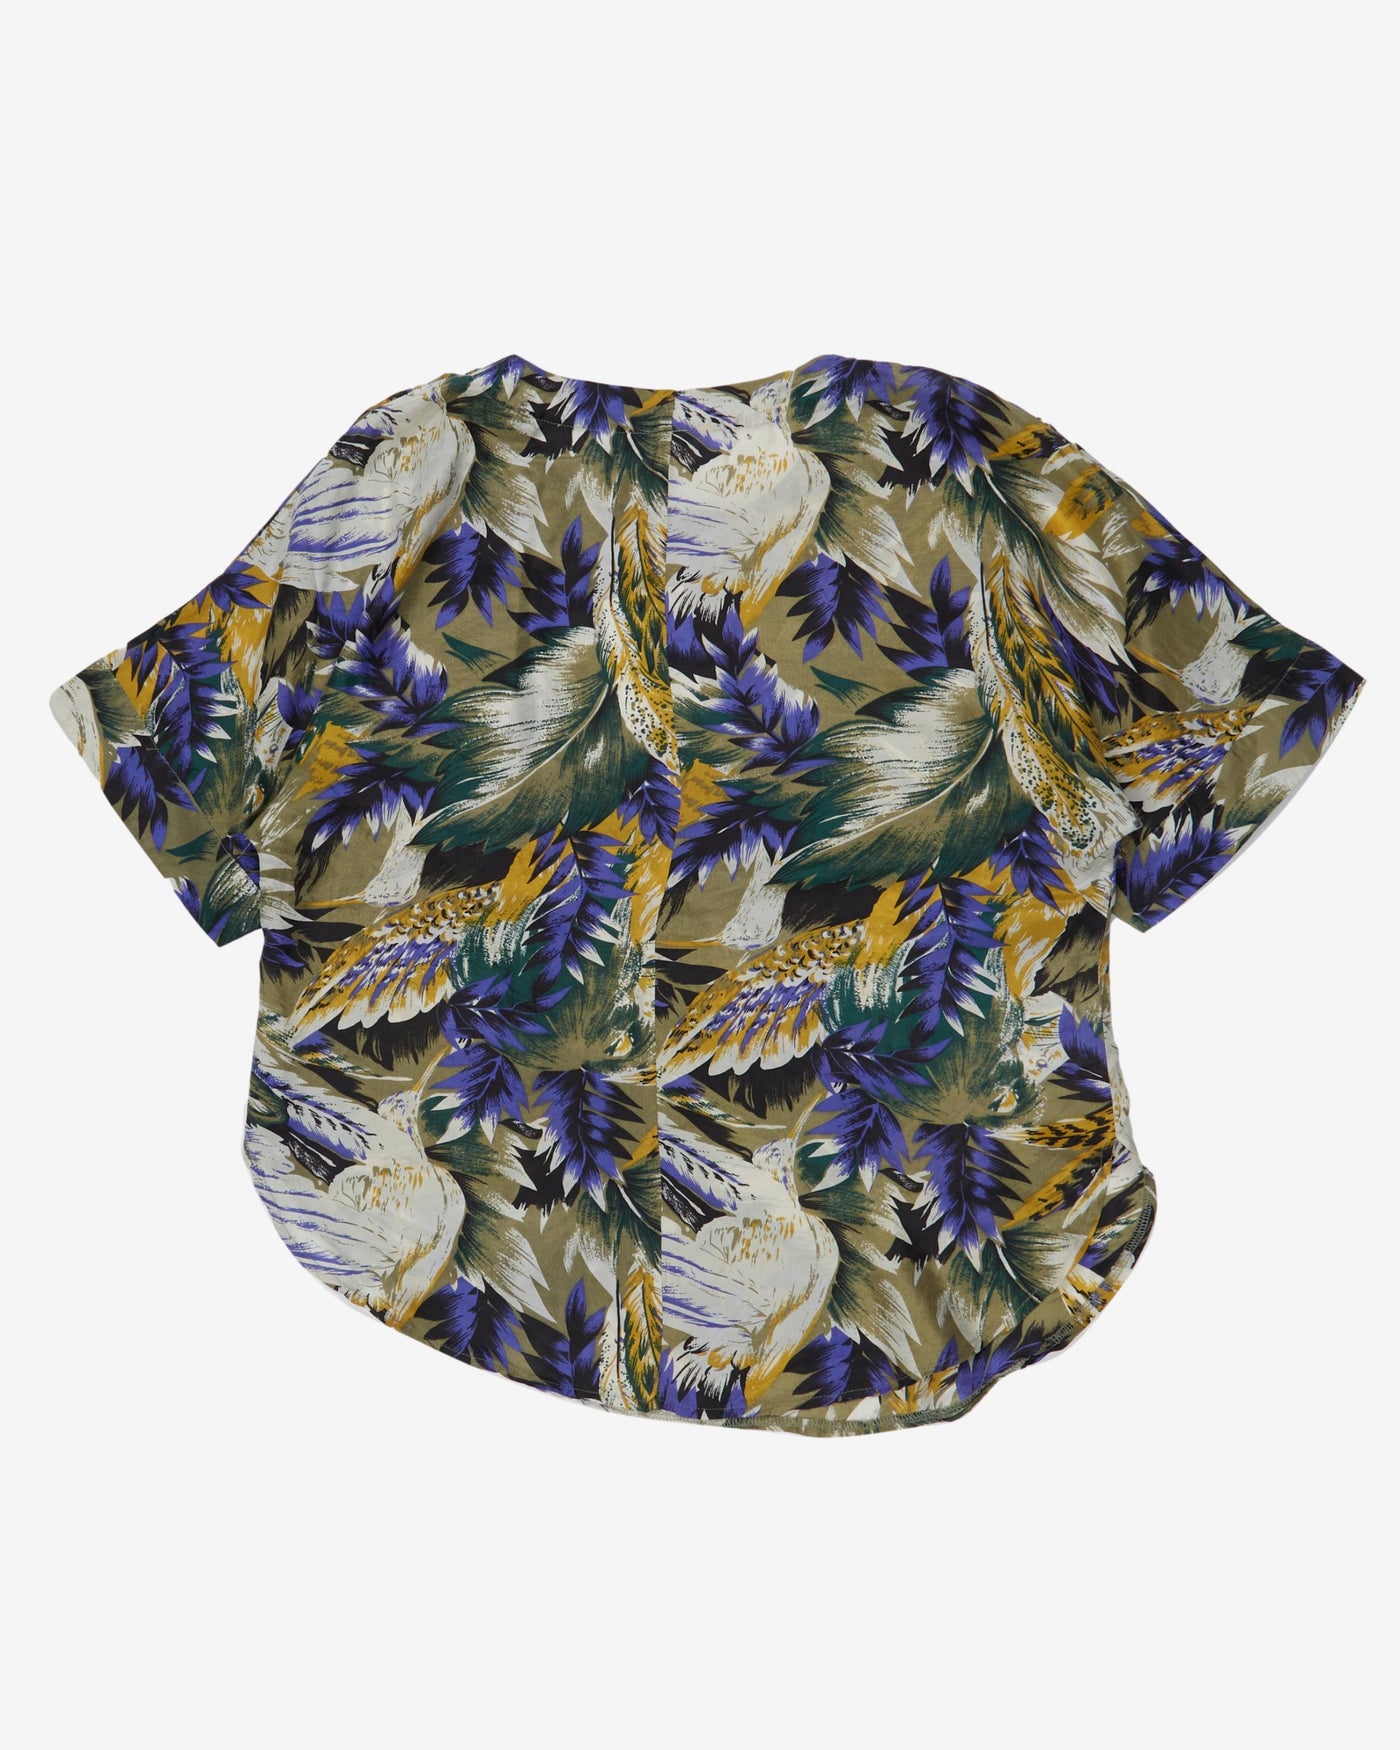 Purple floral silk patterned blouse - M / L